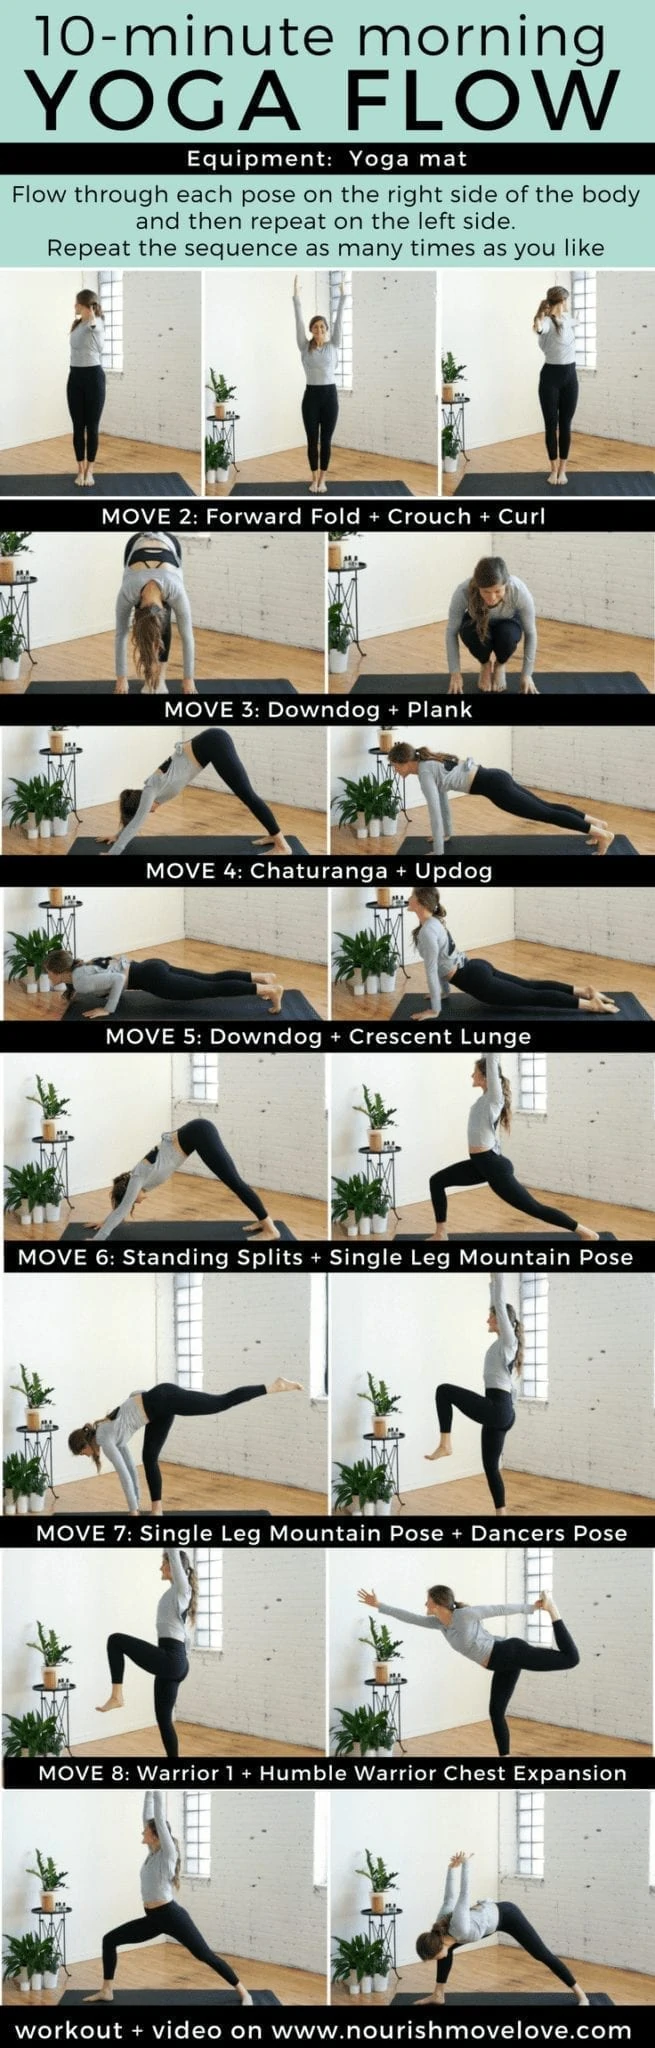 10-Minute Morning Yoga Flow for Beginners | www.nourishmovelove.com